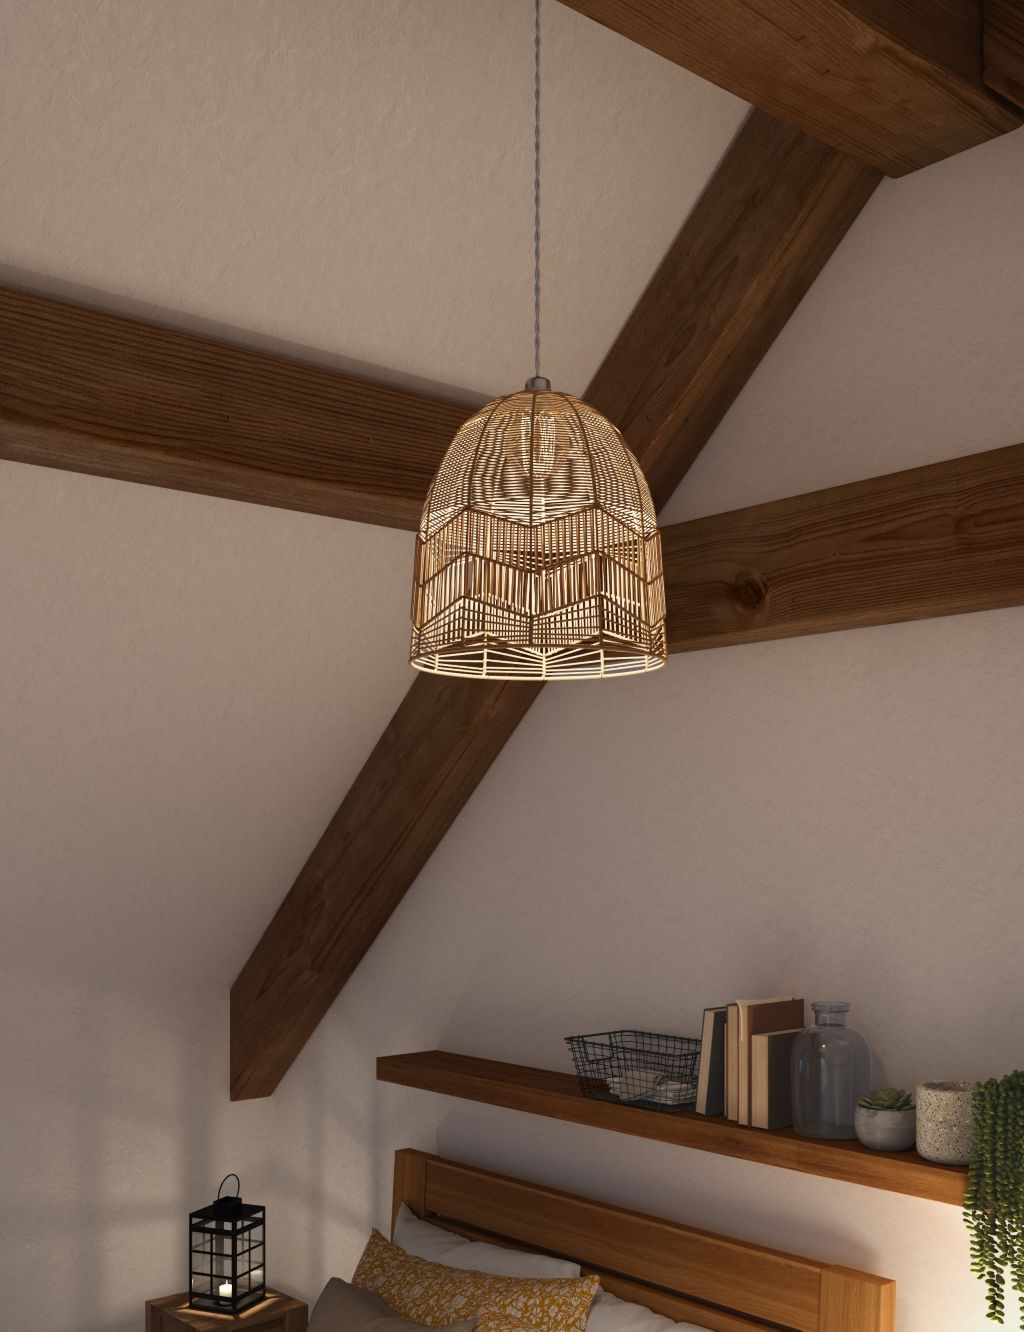 Rattan Ceiling Lamp Shade